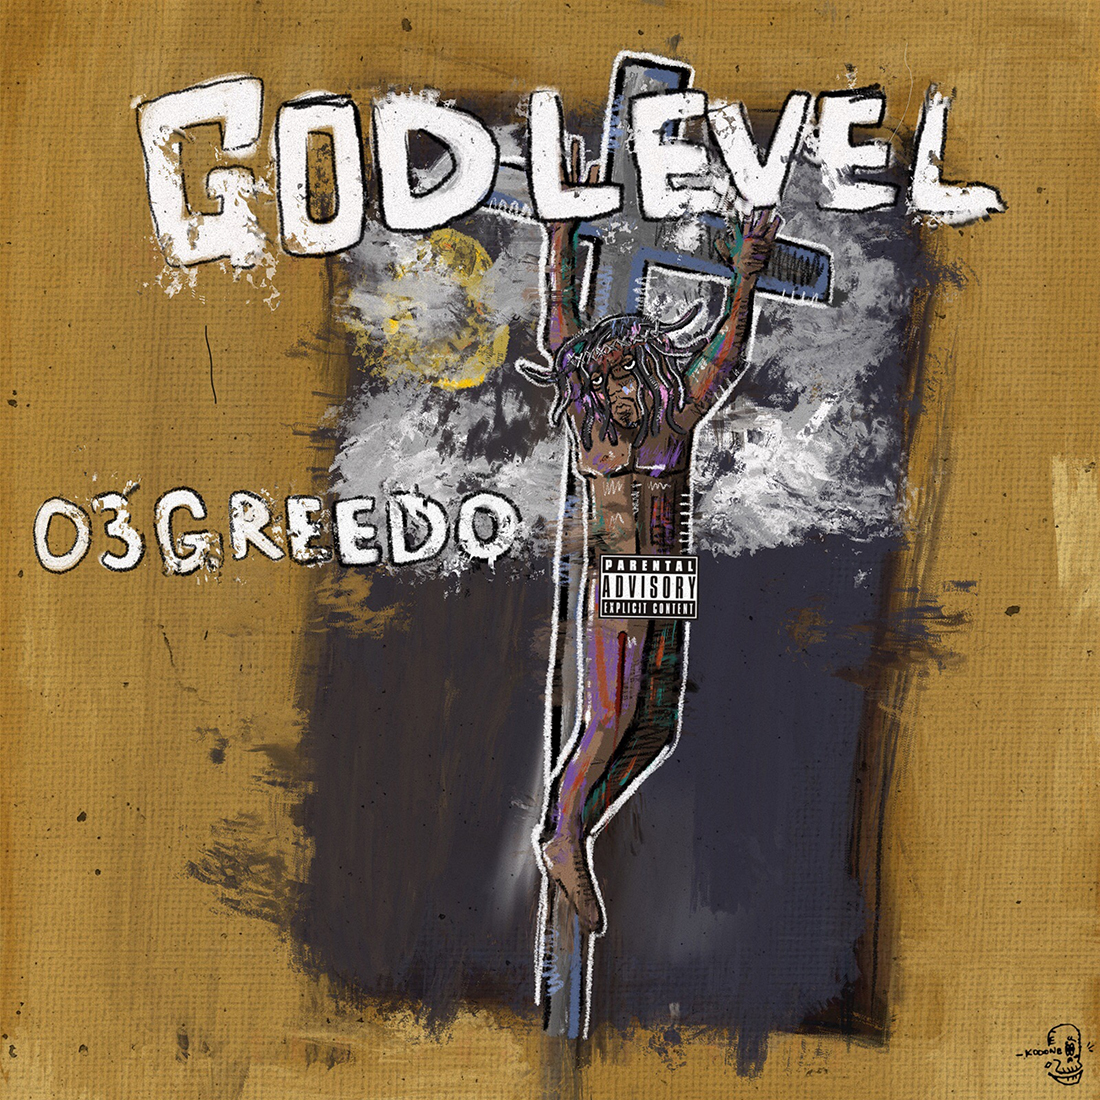 god level 03 greedo art